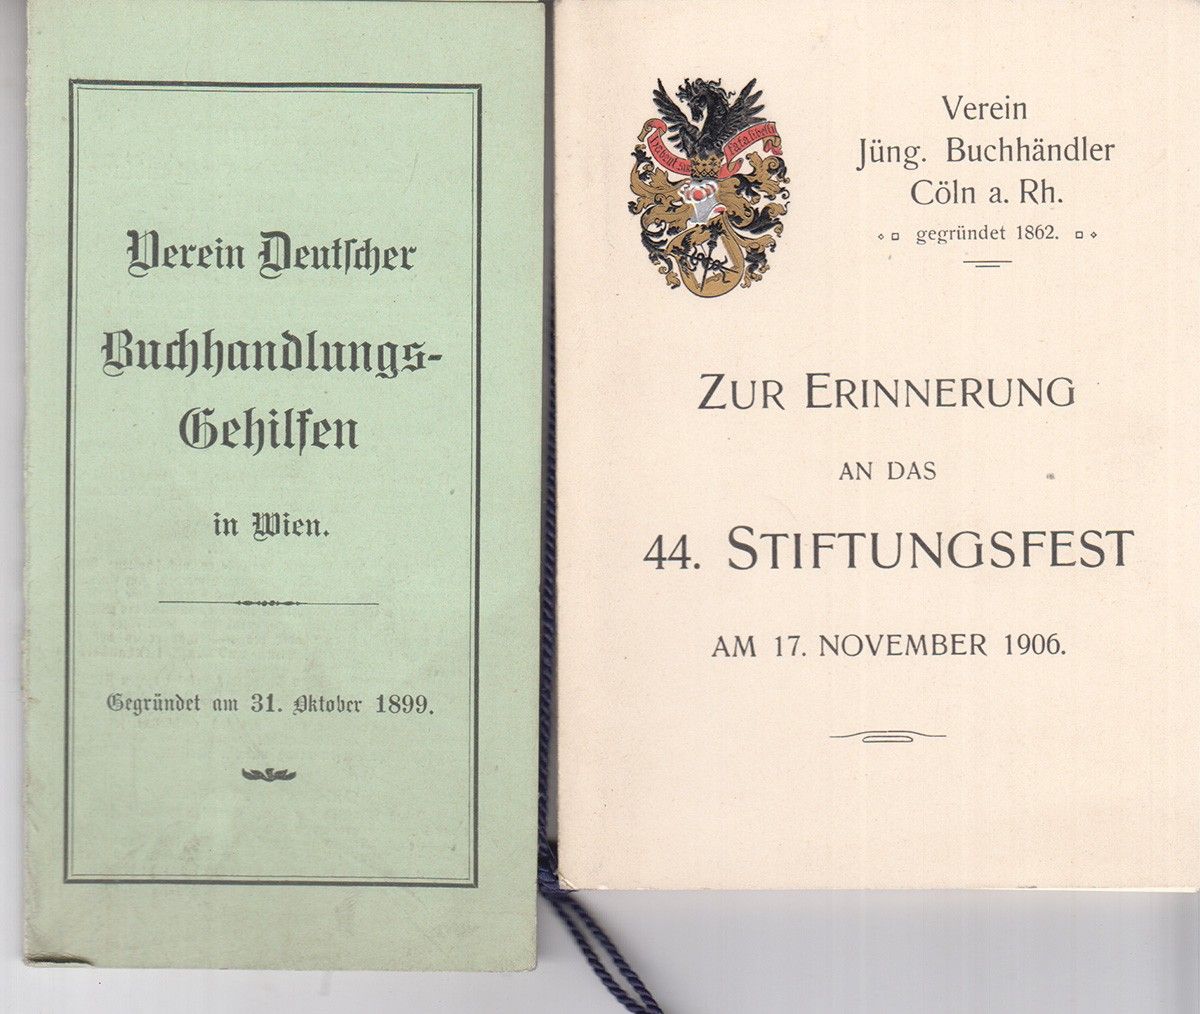  Zur Erinnerung an das 44. Stiftungsfest am 17. November 1906. Verein Jng. Buchhndler Cln a. Rh.